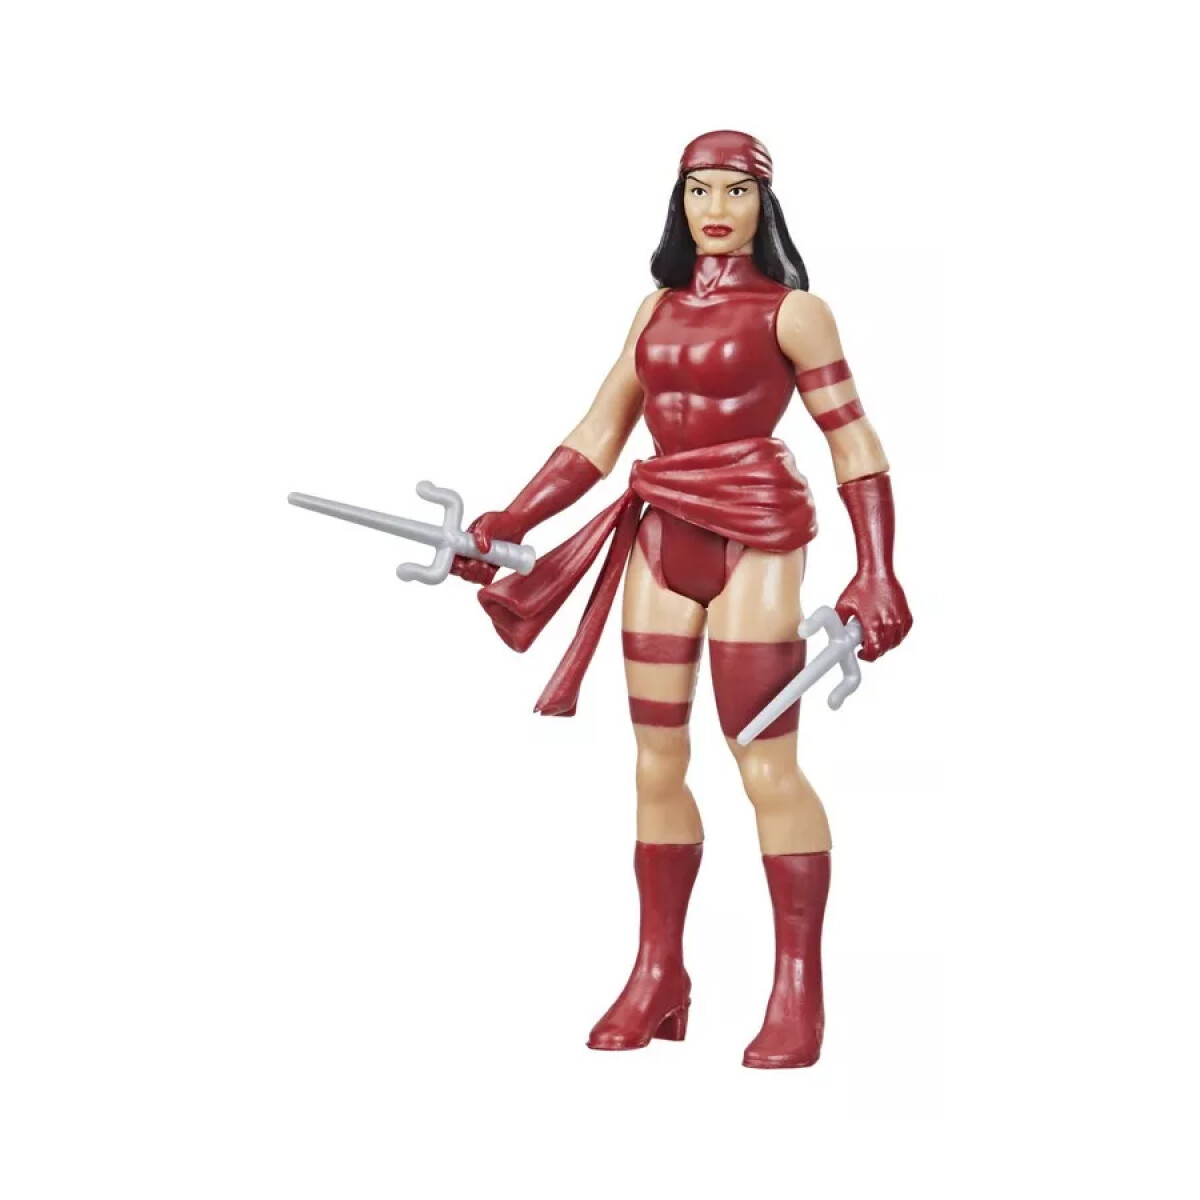 Marvel Legends Elektra 